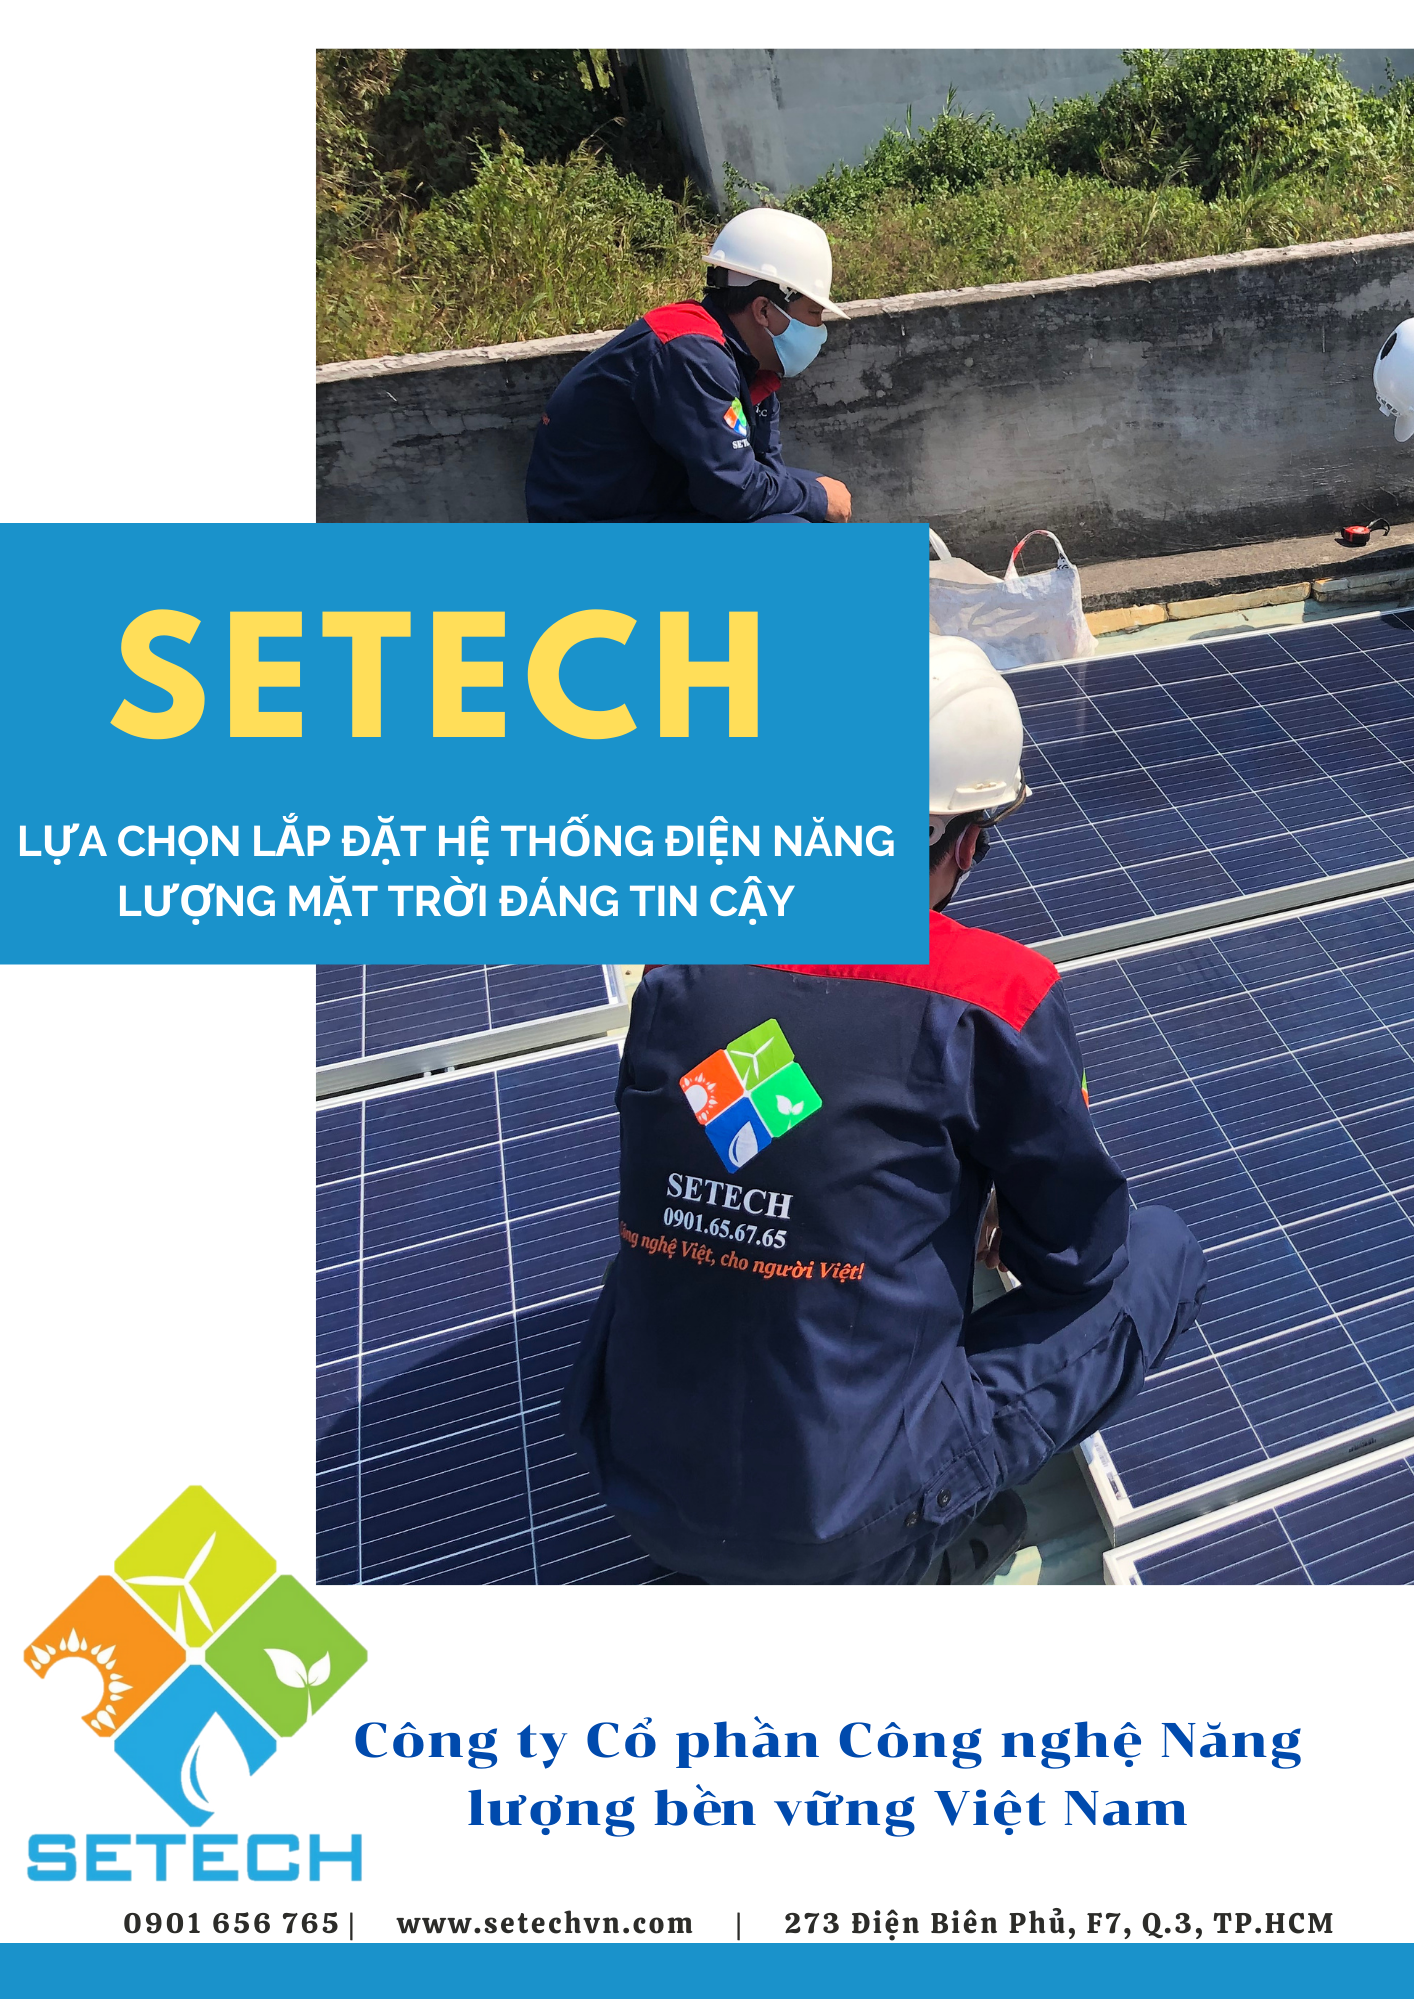 Đội ngũ nhân viên SETECH đang tiến hành thi công lắp ráp hệ thống điện năng lượng mặt trời